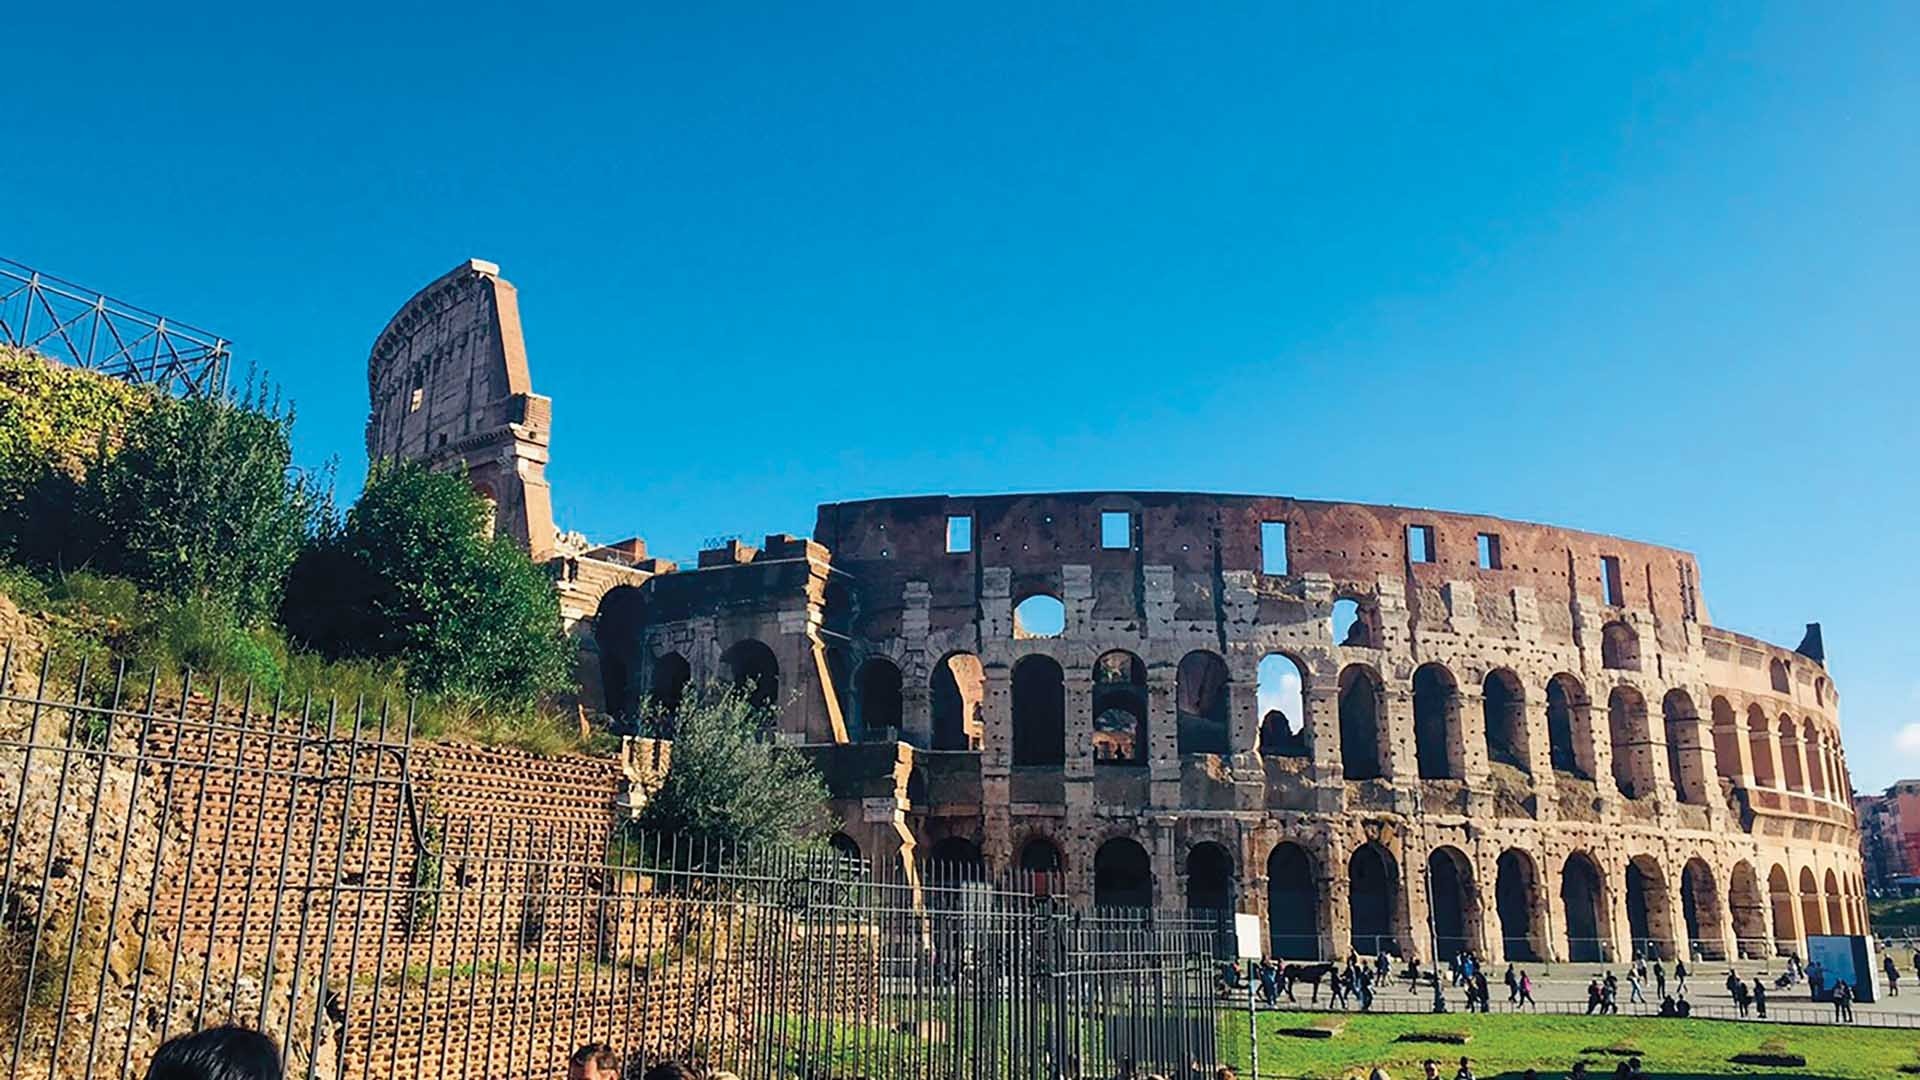 Nhớ về bầu trời xanh ngắt ở Rome